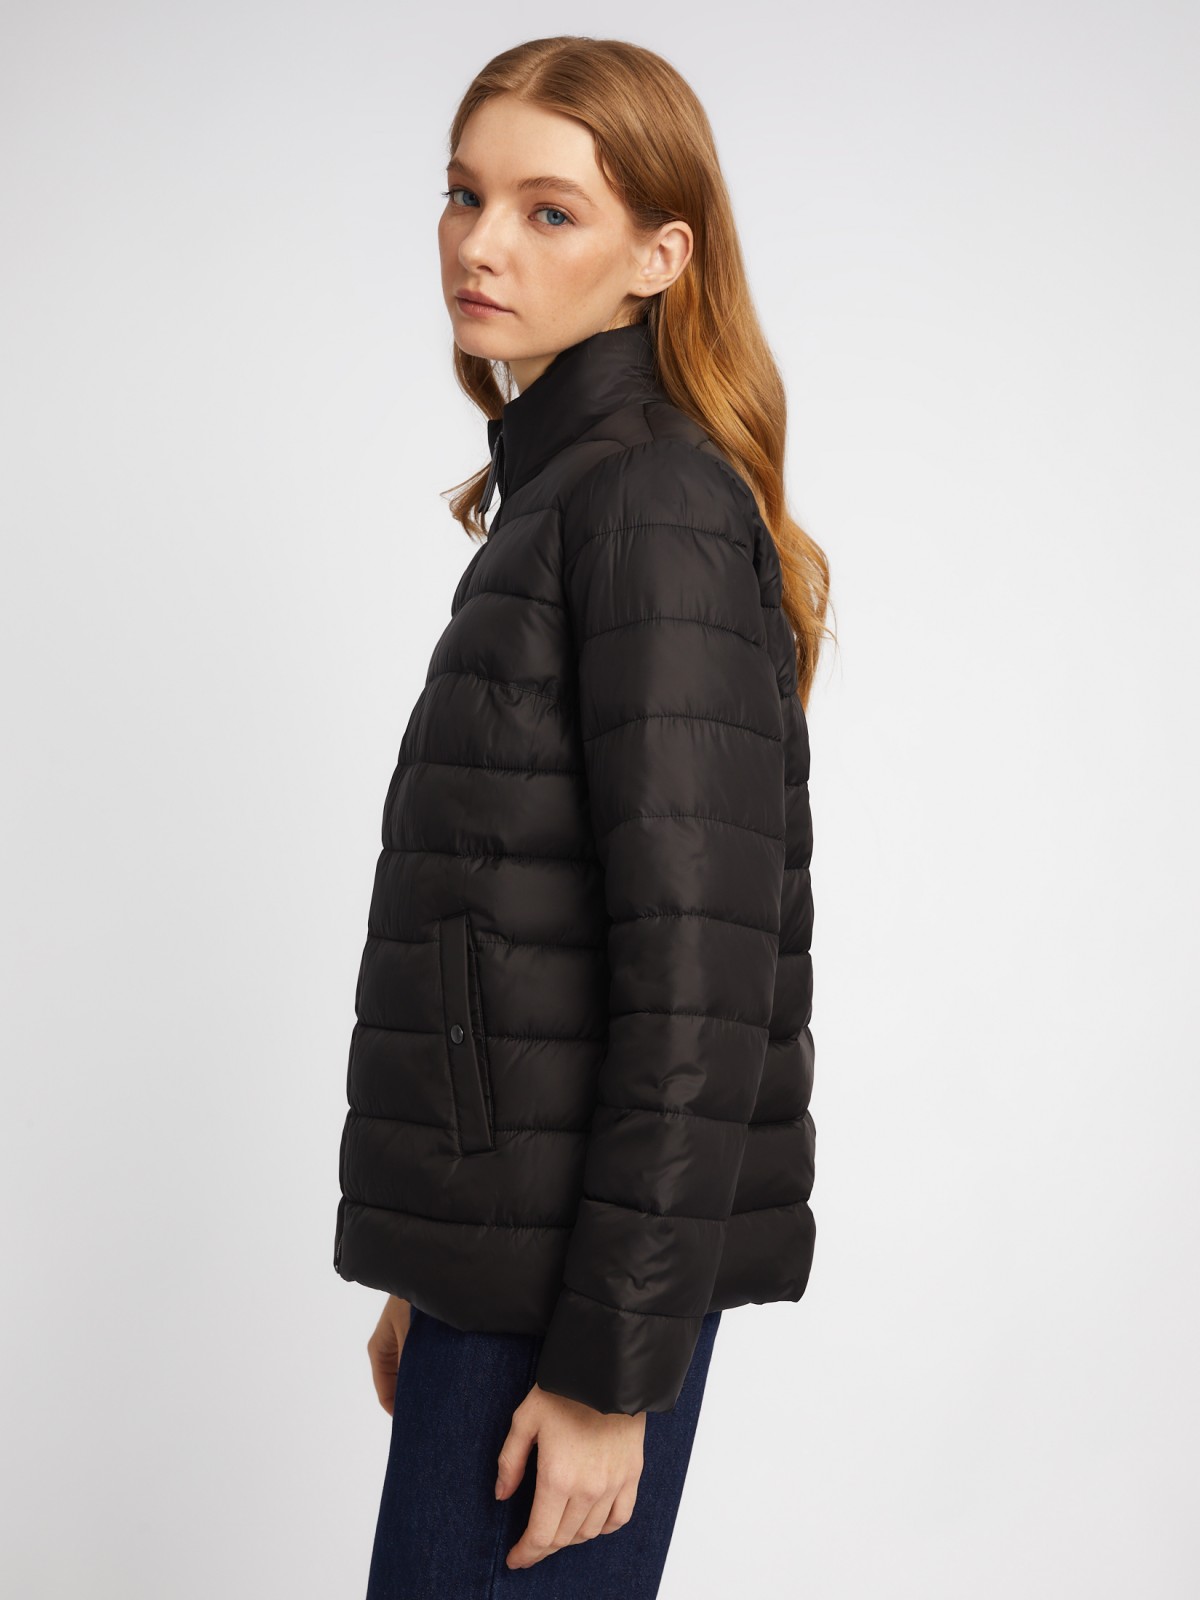 Утеплённая короткая куртка на молнии с воротником zolla 024135112154, цвет черный, размер S - фото 4